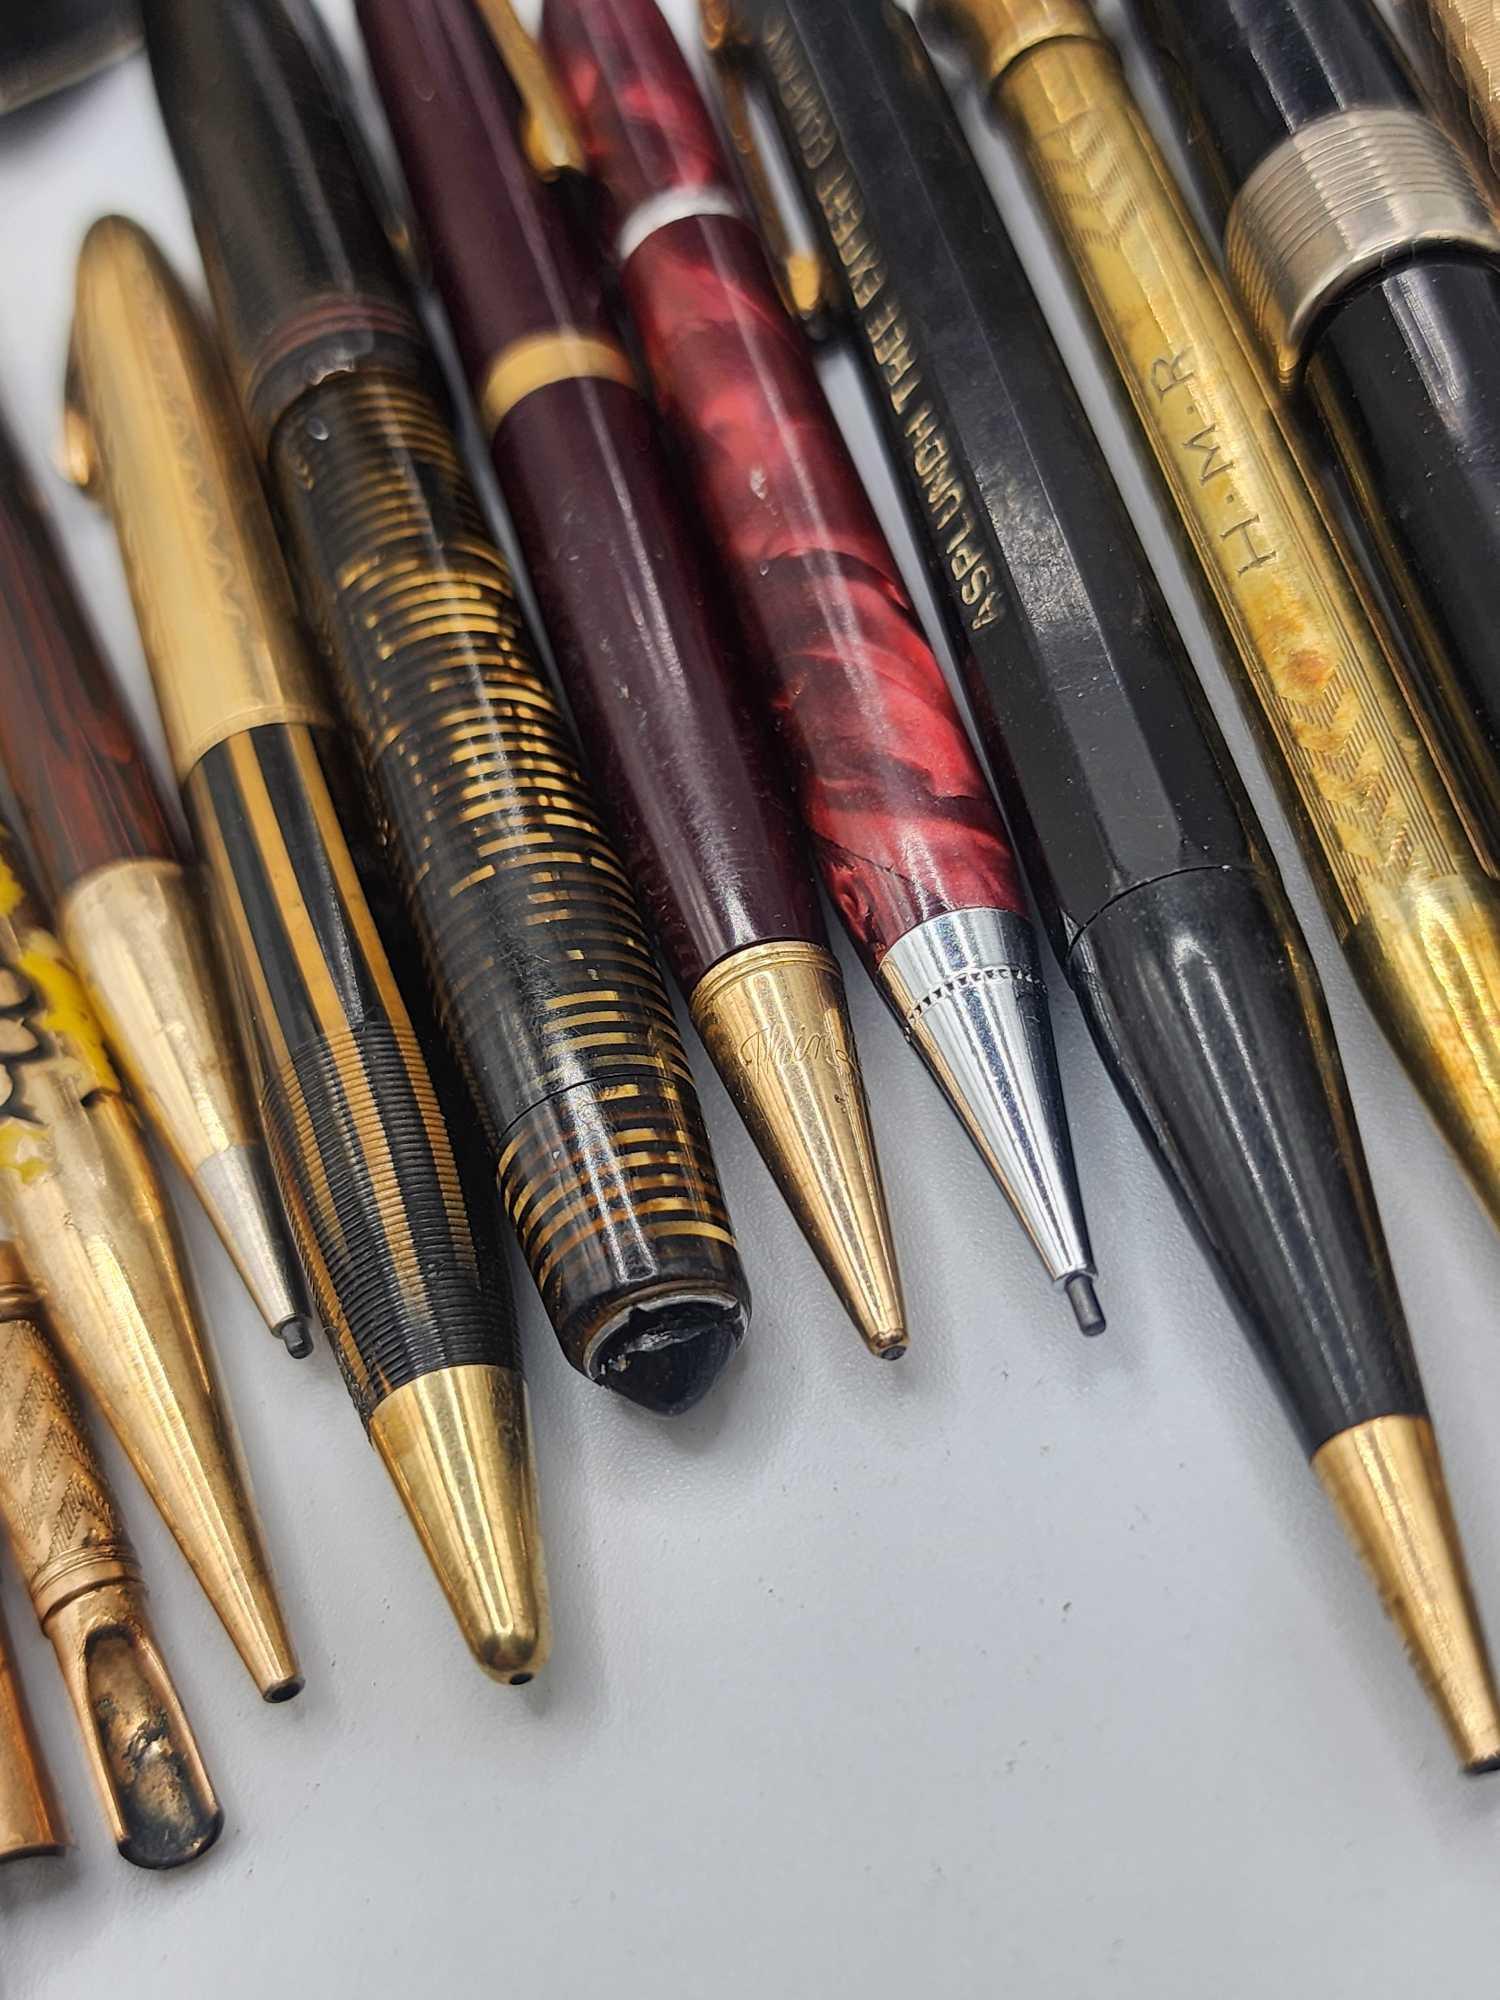 Antique & vintage fountain pens & pencils lot